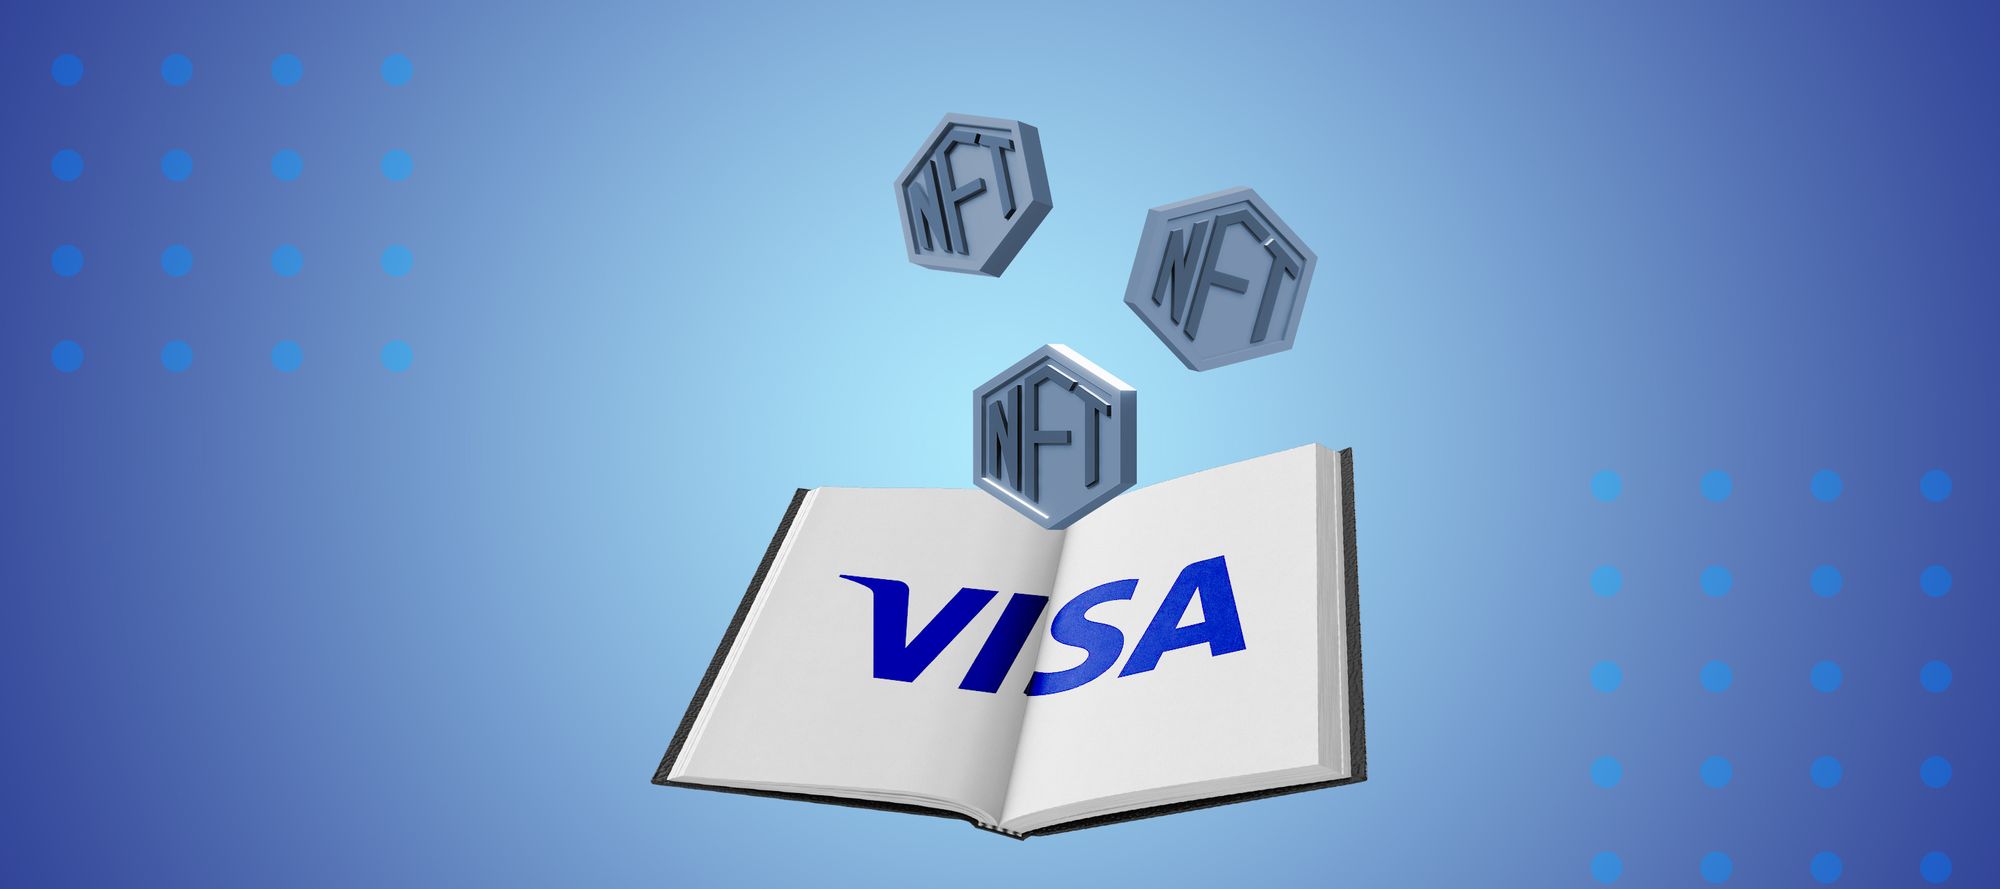 Visa запустила программу по созданию NFT